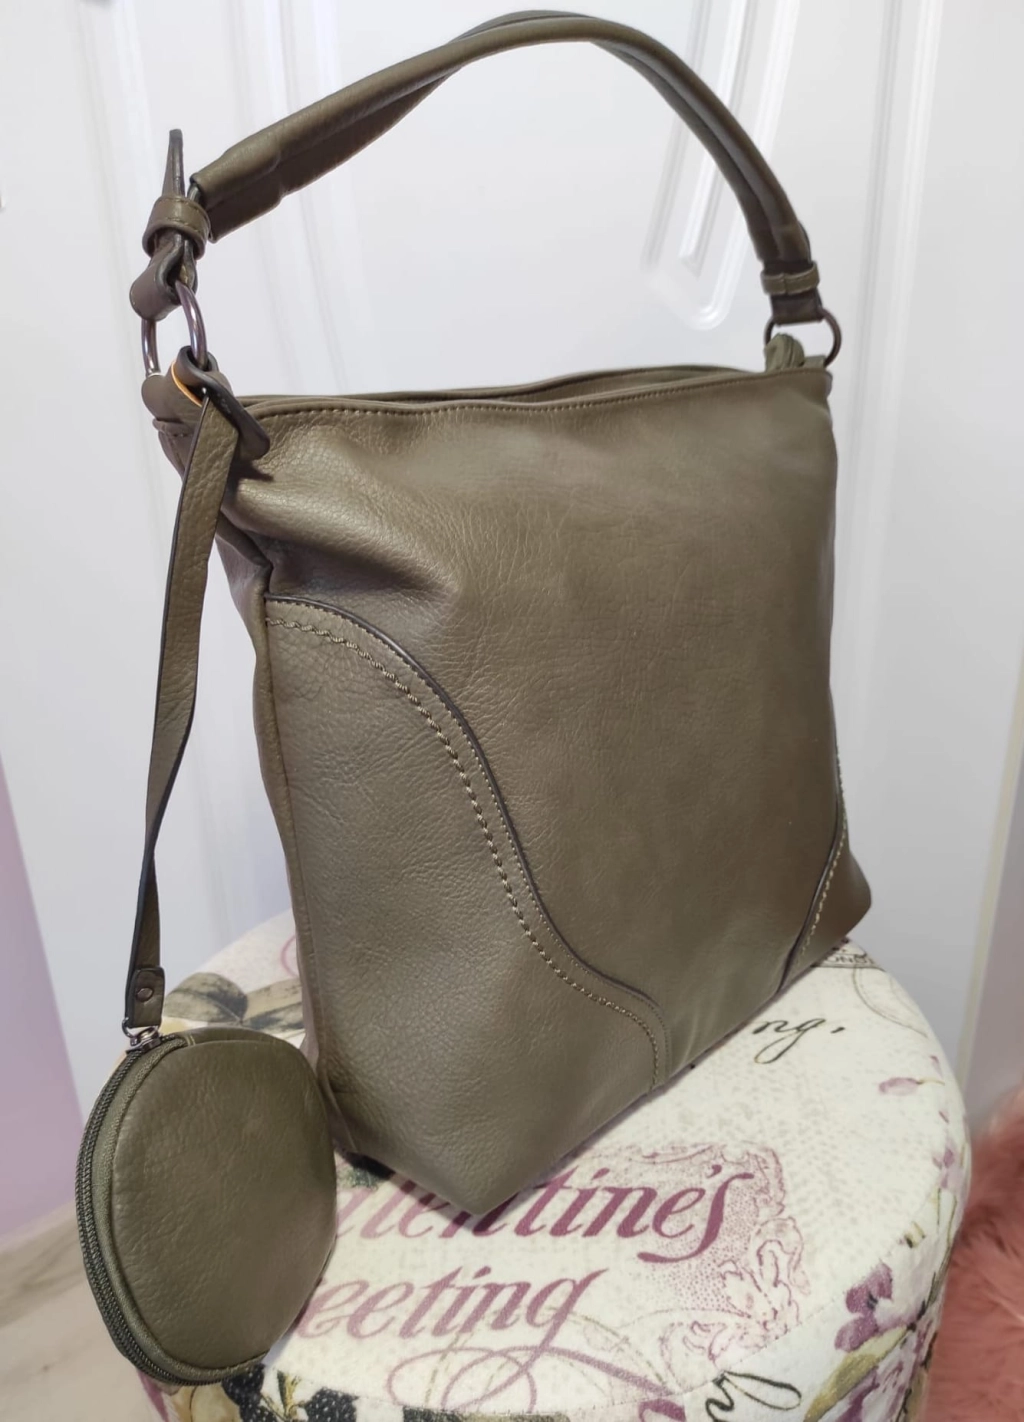 Άνετη μεγάλη δερμάτινη τσάντα με τρία διαμερίσματα και εξωτερικές τσέπες